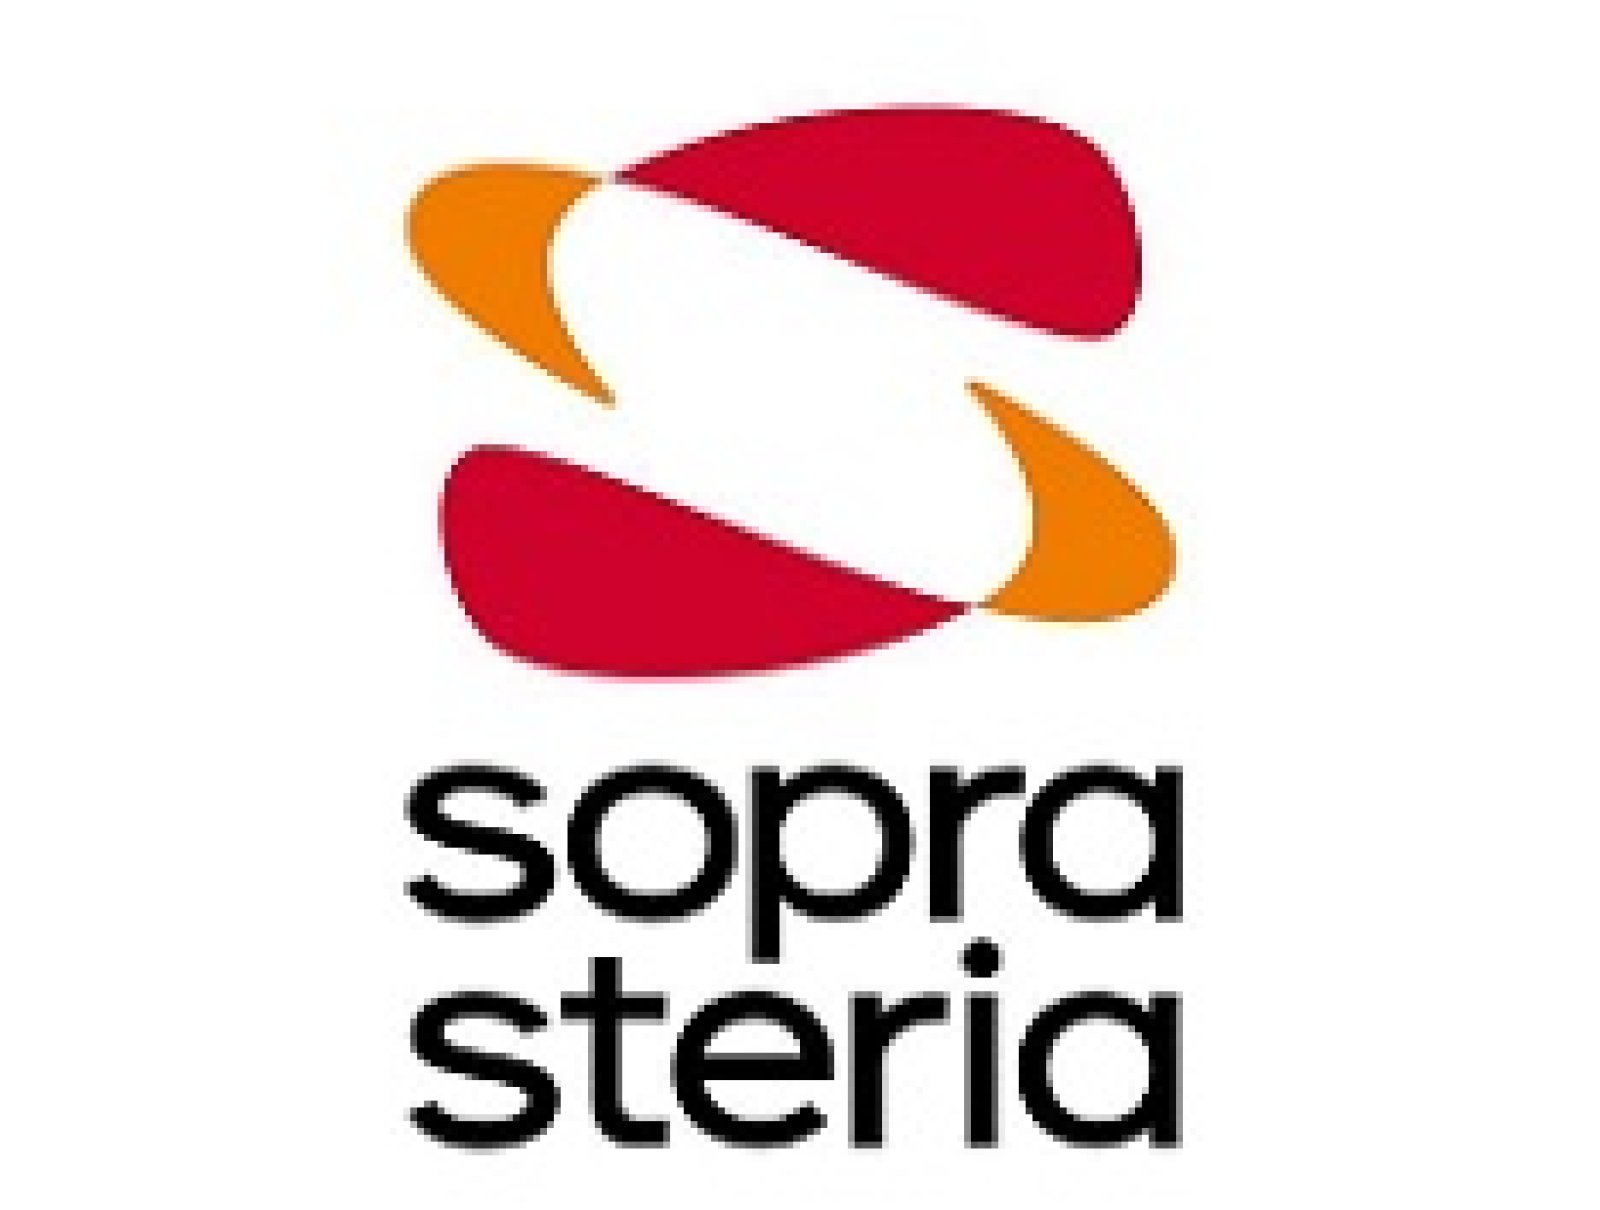 Logo Sopra Steria Group SpA